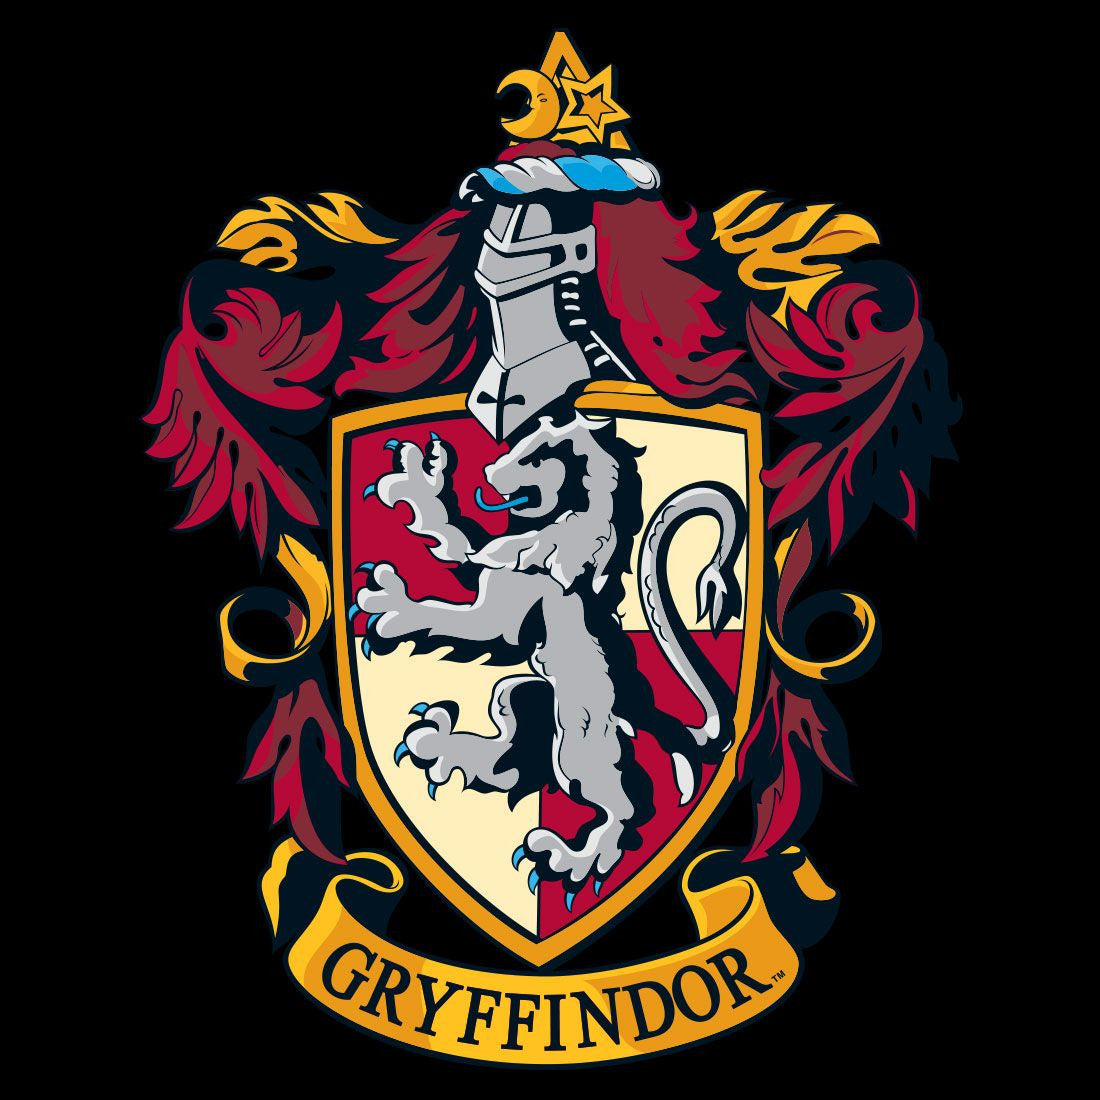 Harry Potter t-shirt - Gryffindor Quidditch Team